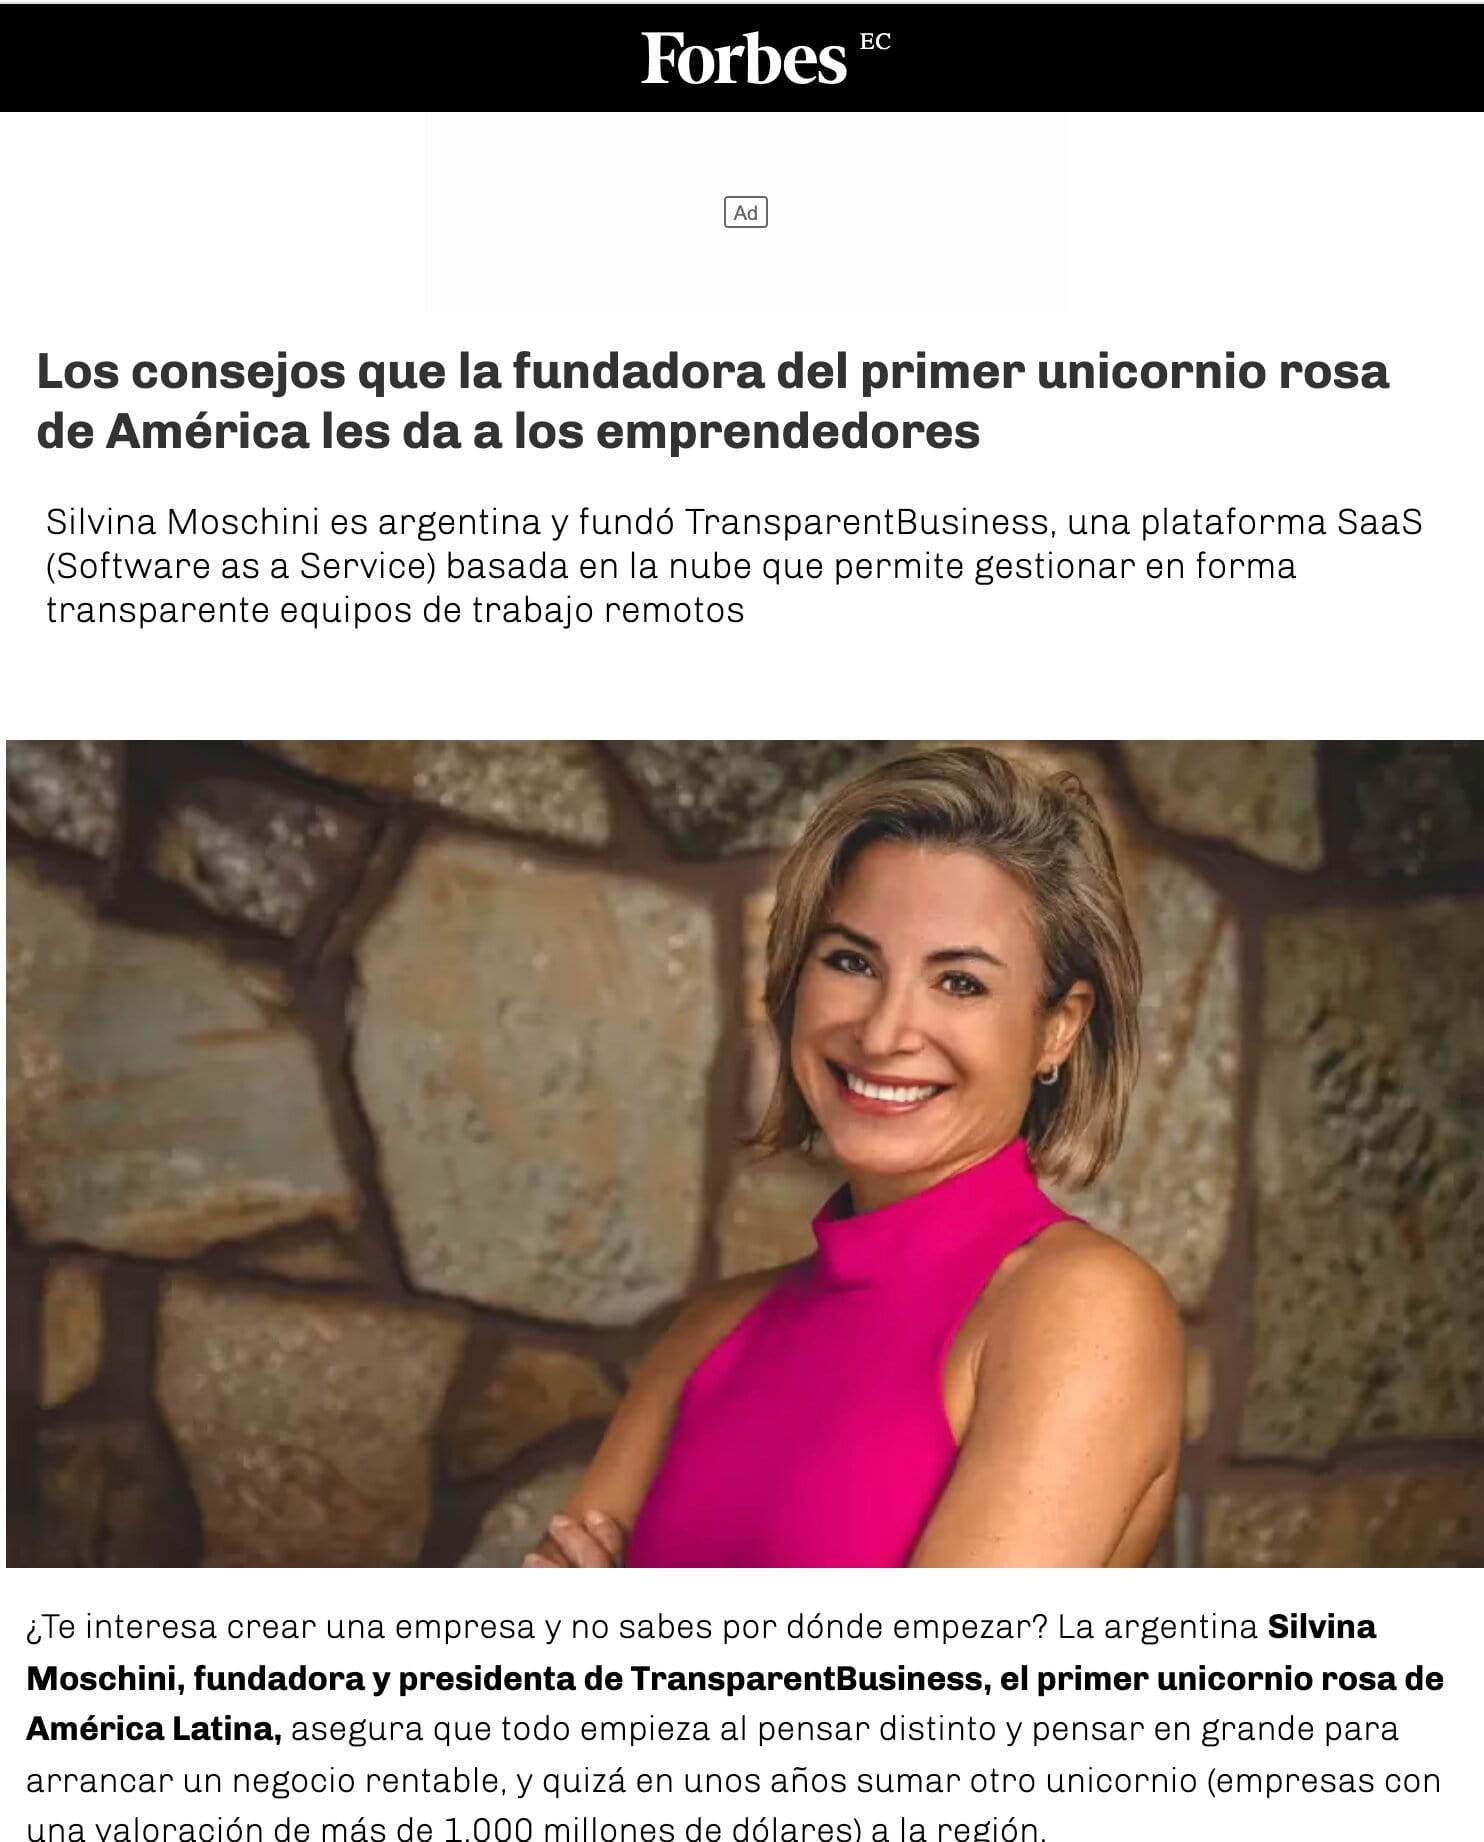 Forbes magazine - Ecuador